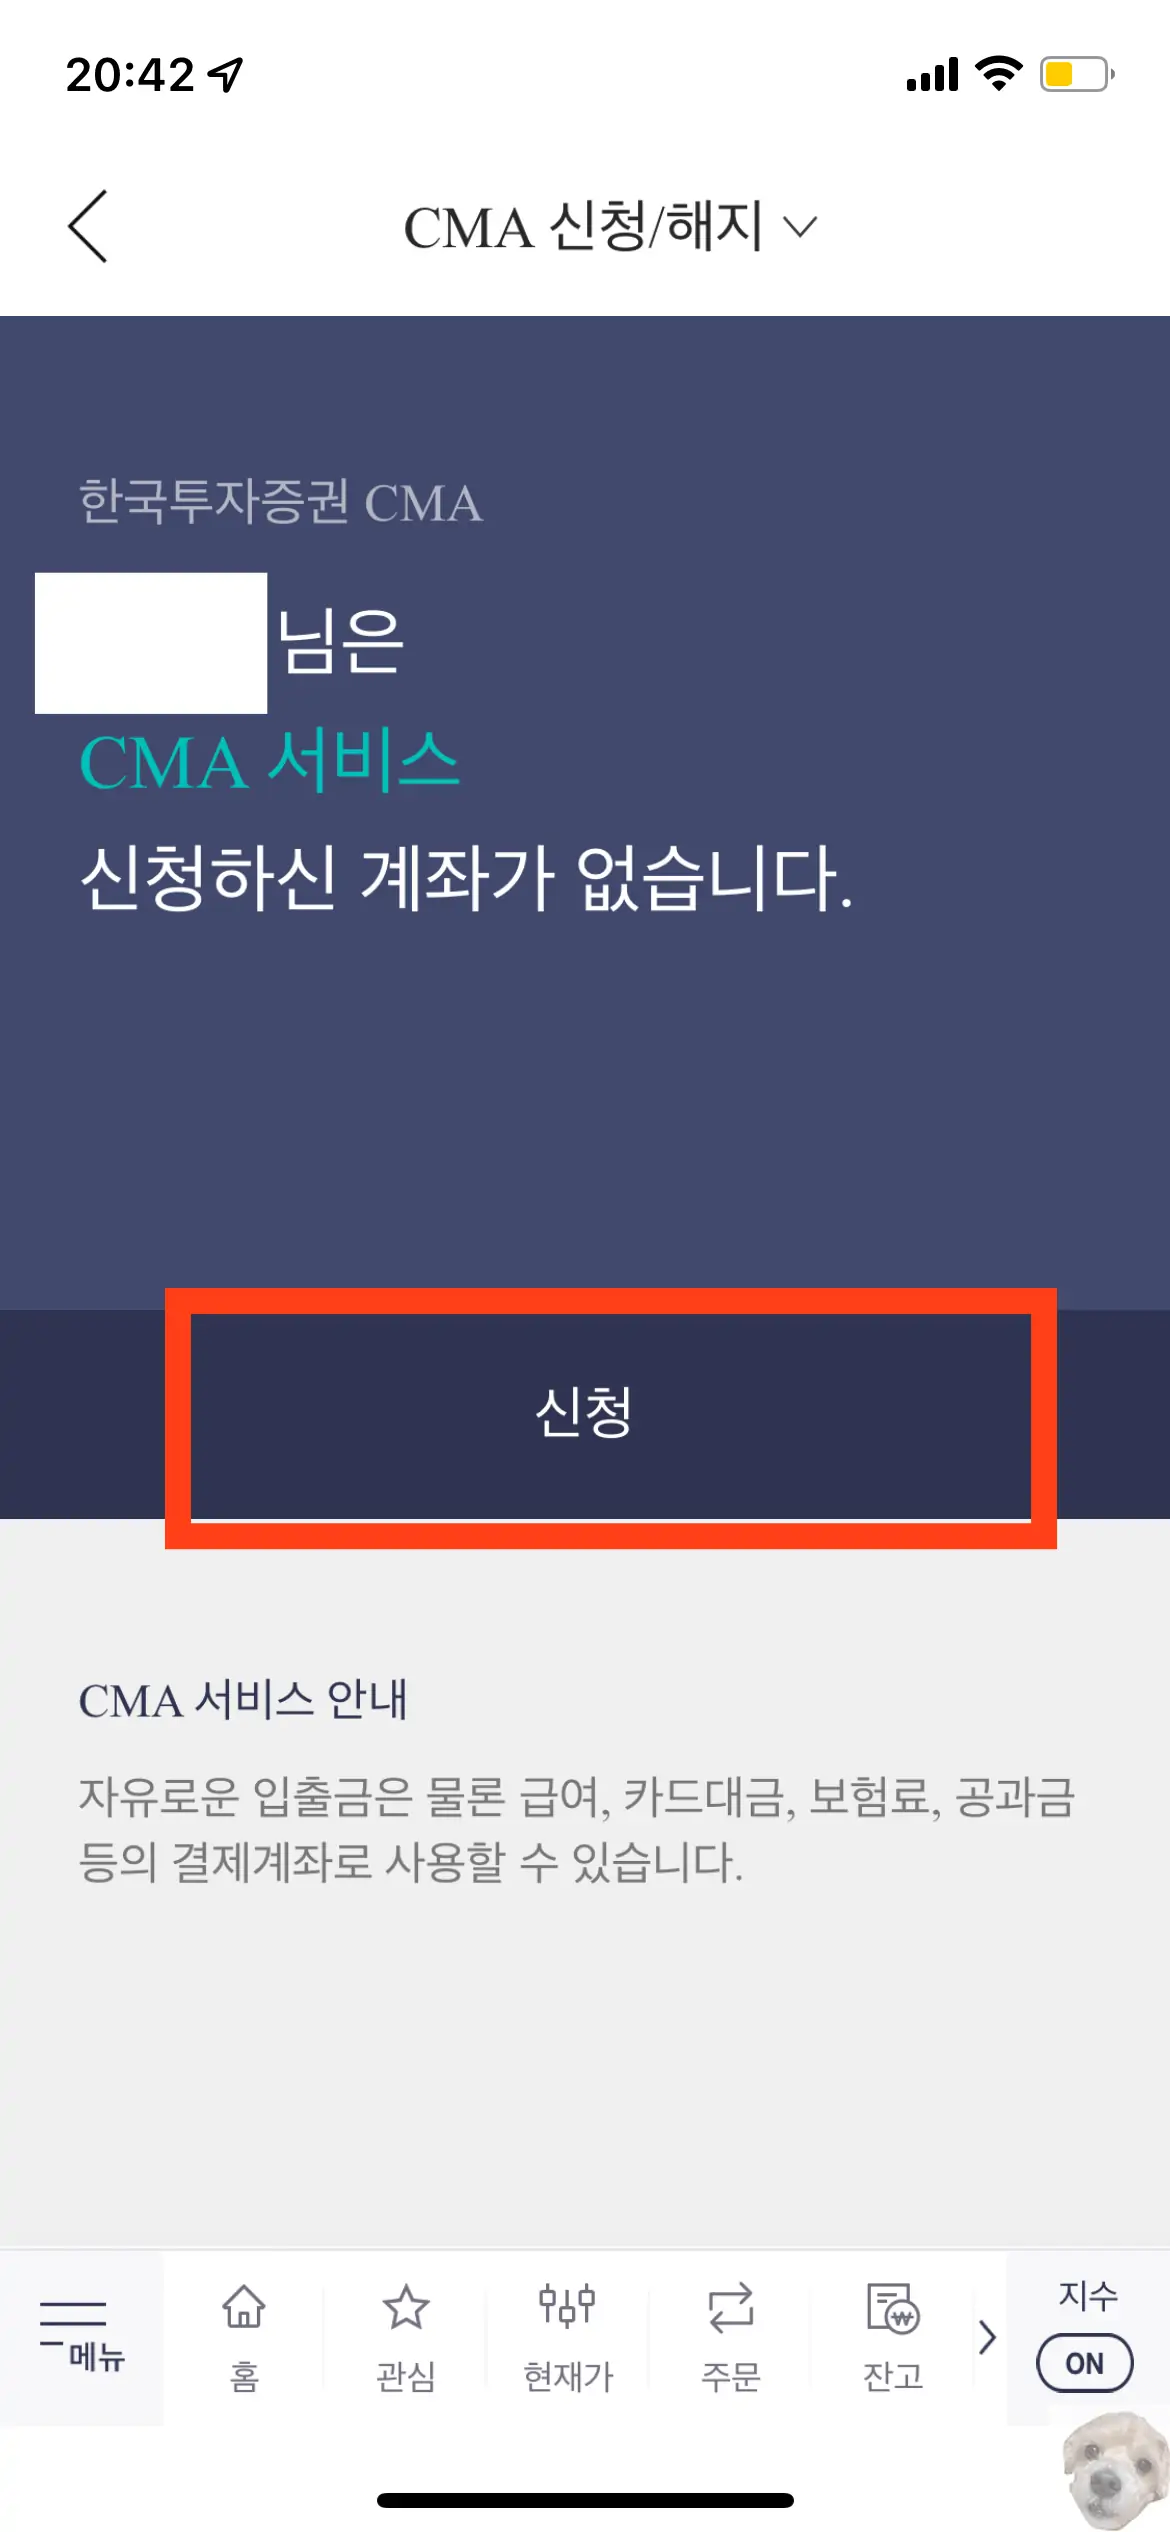 내가 사용하는 한국투자증권 앱에서 CMA 통장 개설하는 방법